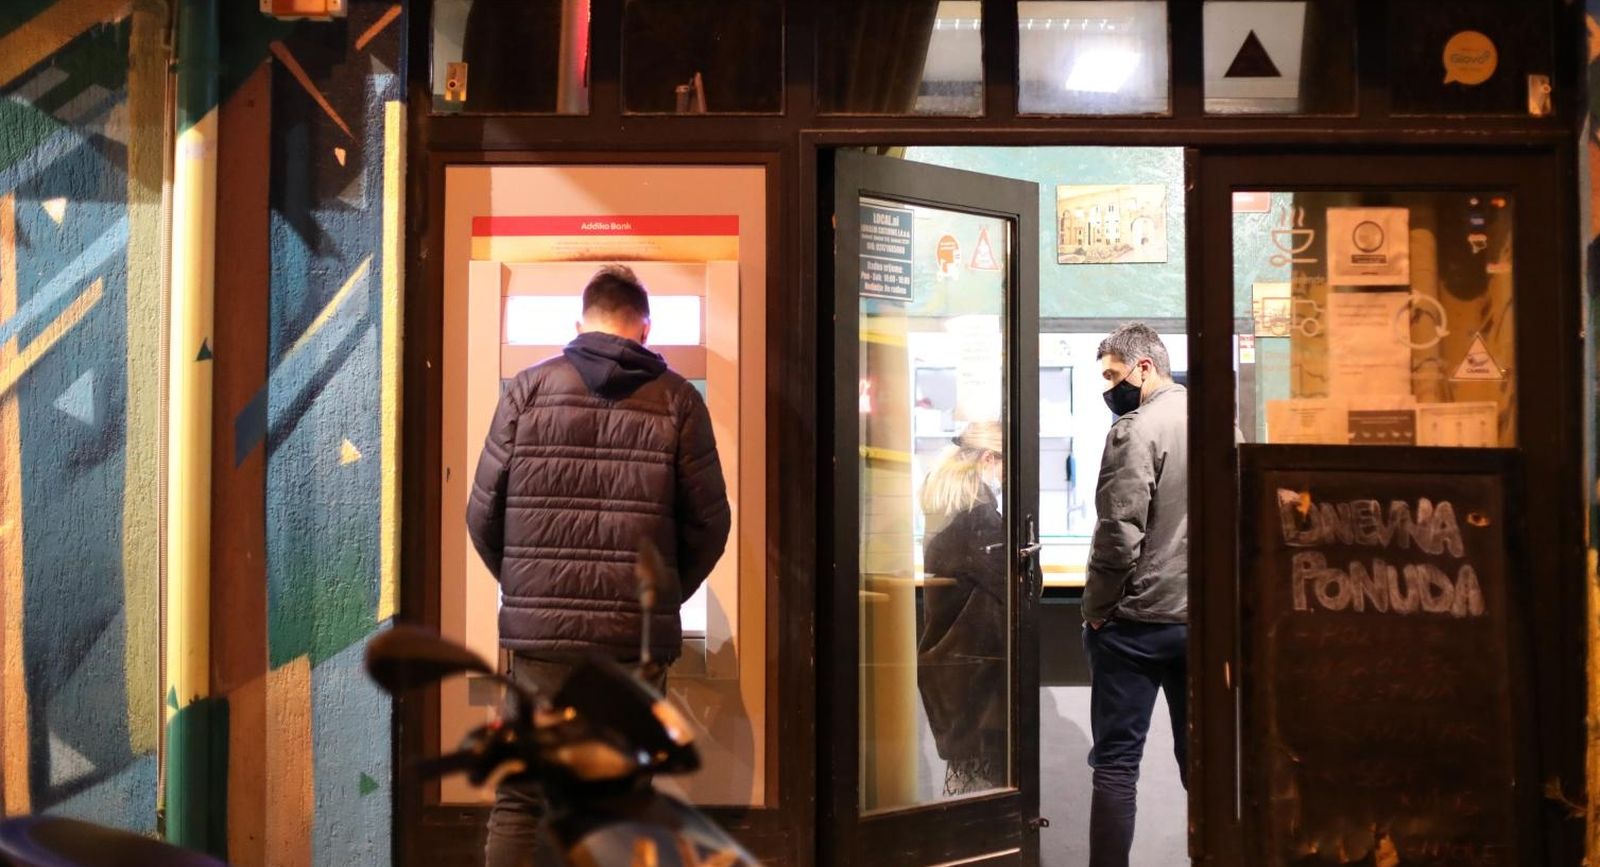 22.12.2020.,Split - Nesto malo iza 15:30 zaposlenik jednog fast food objekta uboden je skarama u vrat i prevezen je u bolnicu.Muskarac koji se dovodi u vezu s napadom je uhicen i priveden, a u tijeku je kriminalisticko istrazivanje.
Photo: Ivo Cagalj/PIXSELL